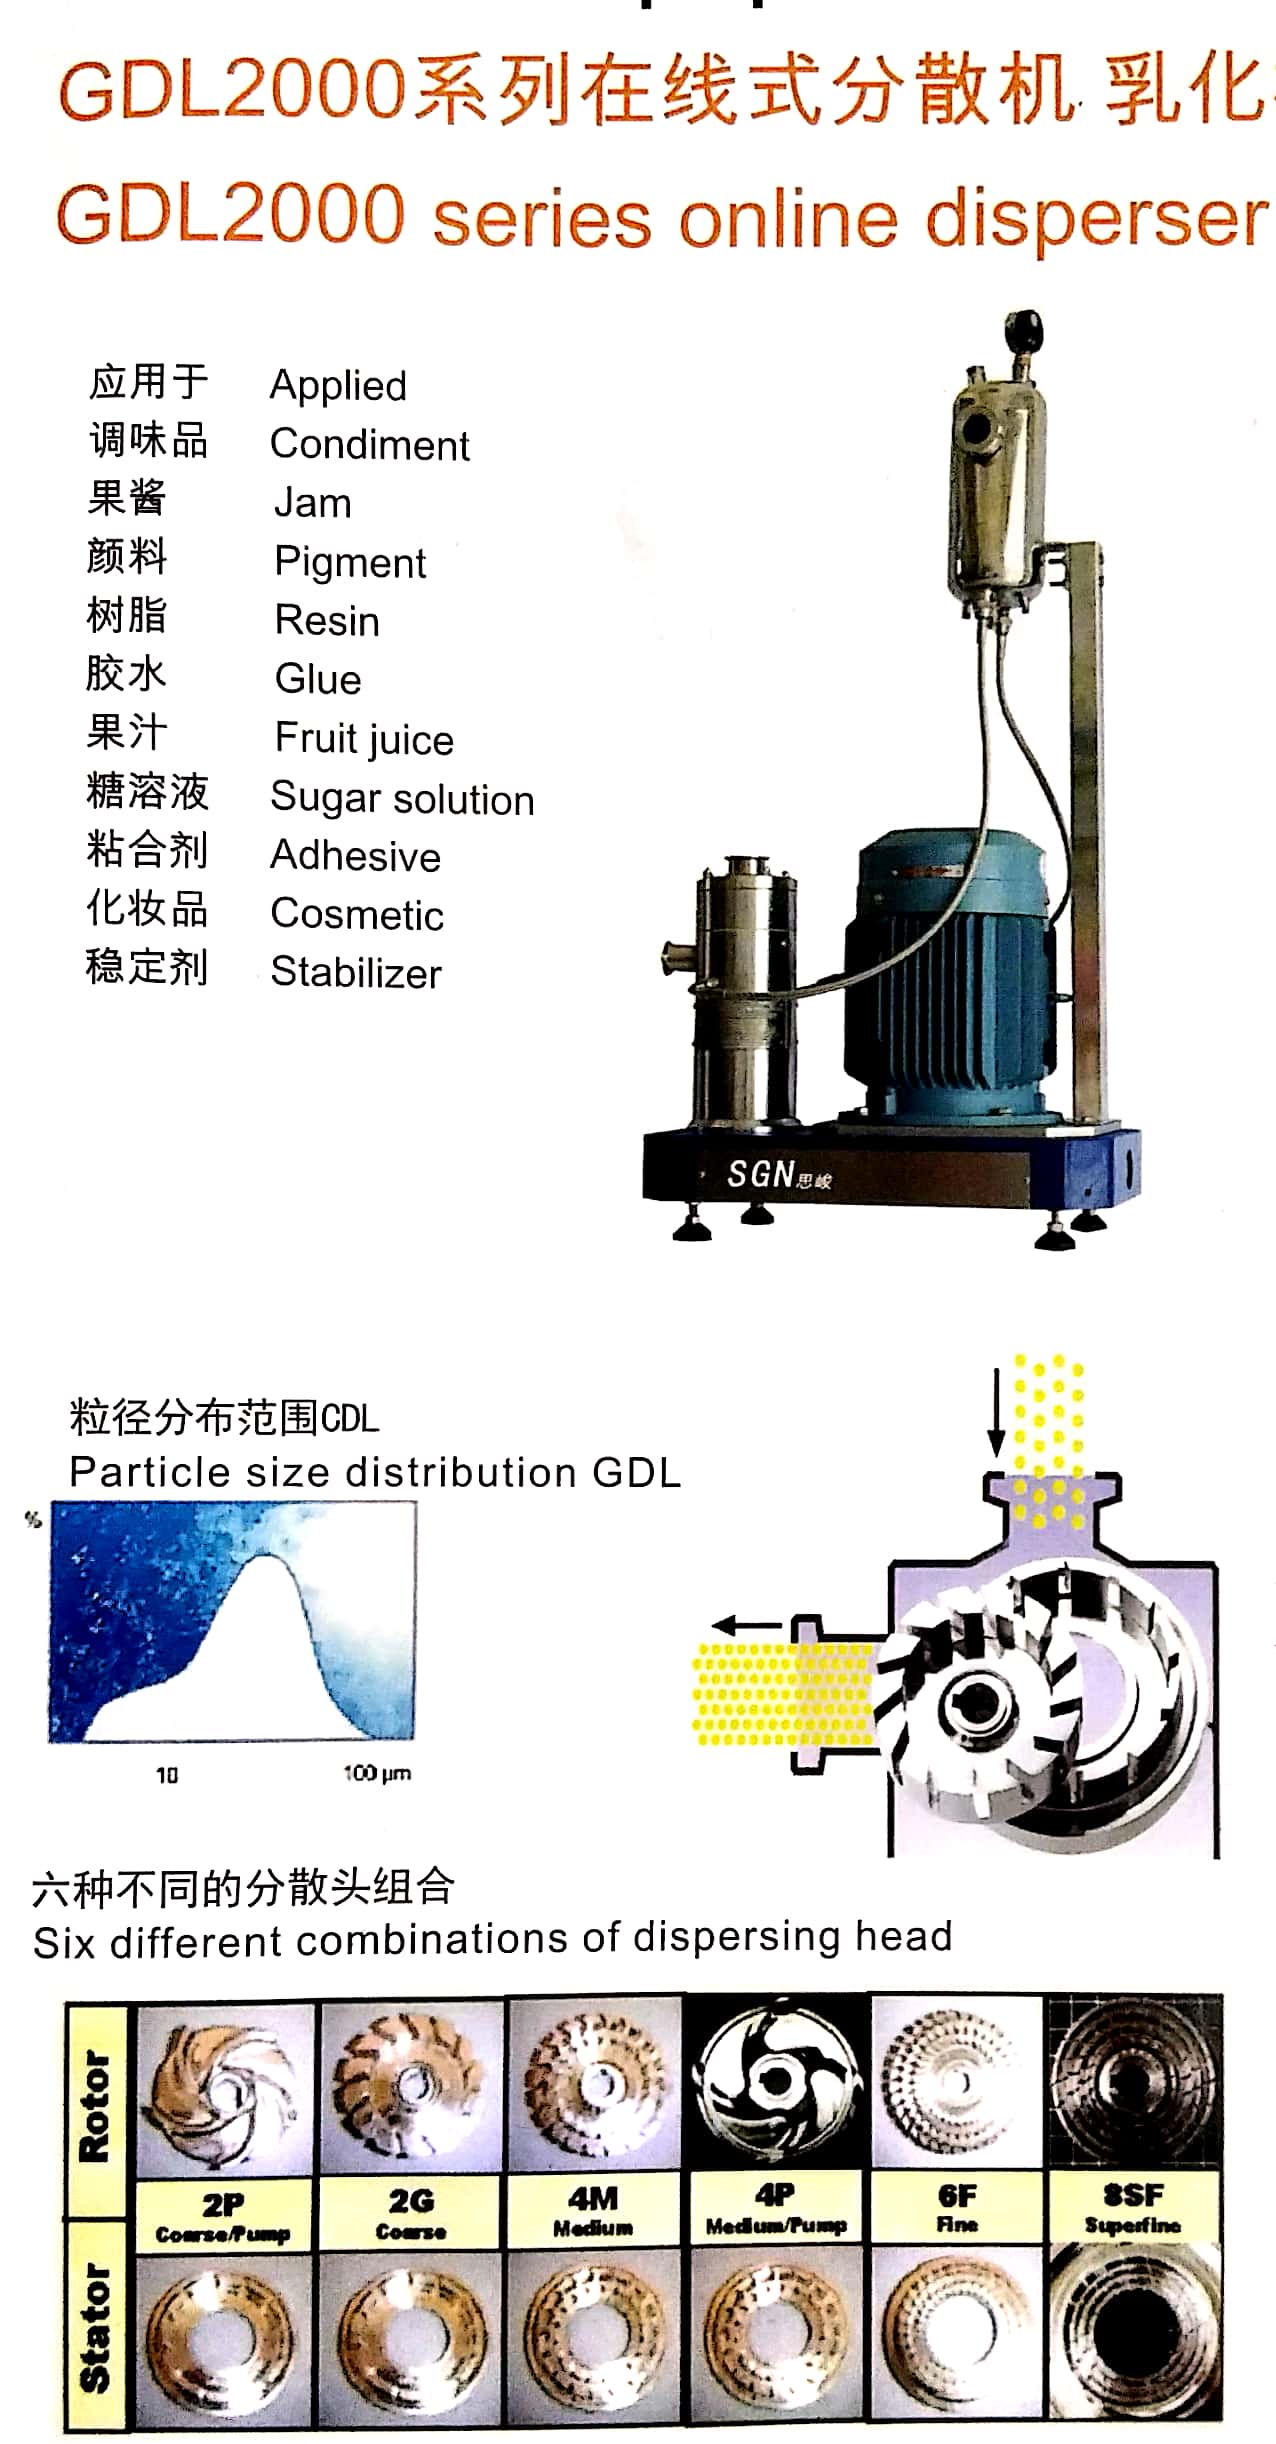 SGN江苏思峻供应食品分散机乳化机化工均质机混合机GDL2000